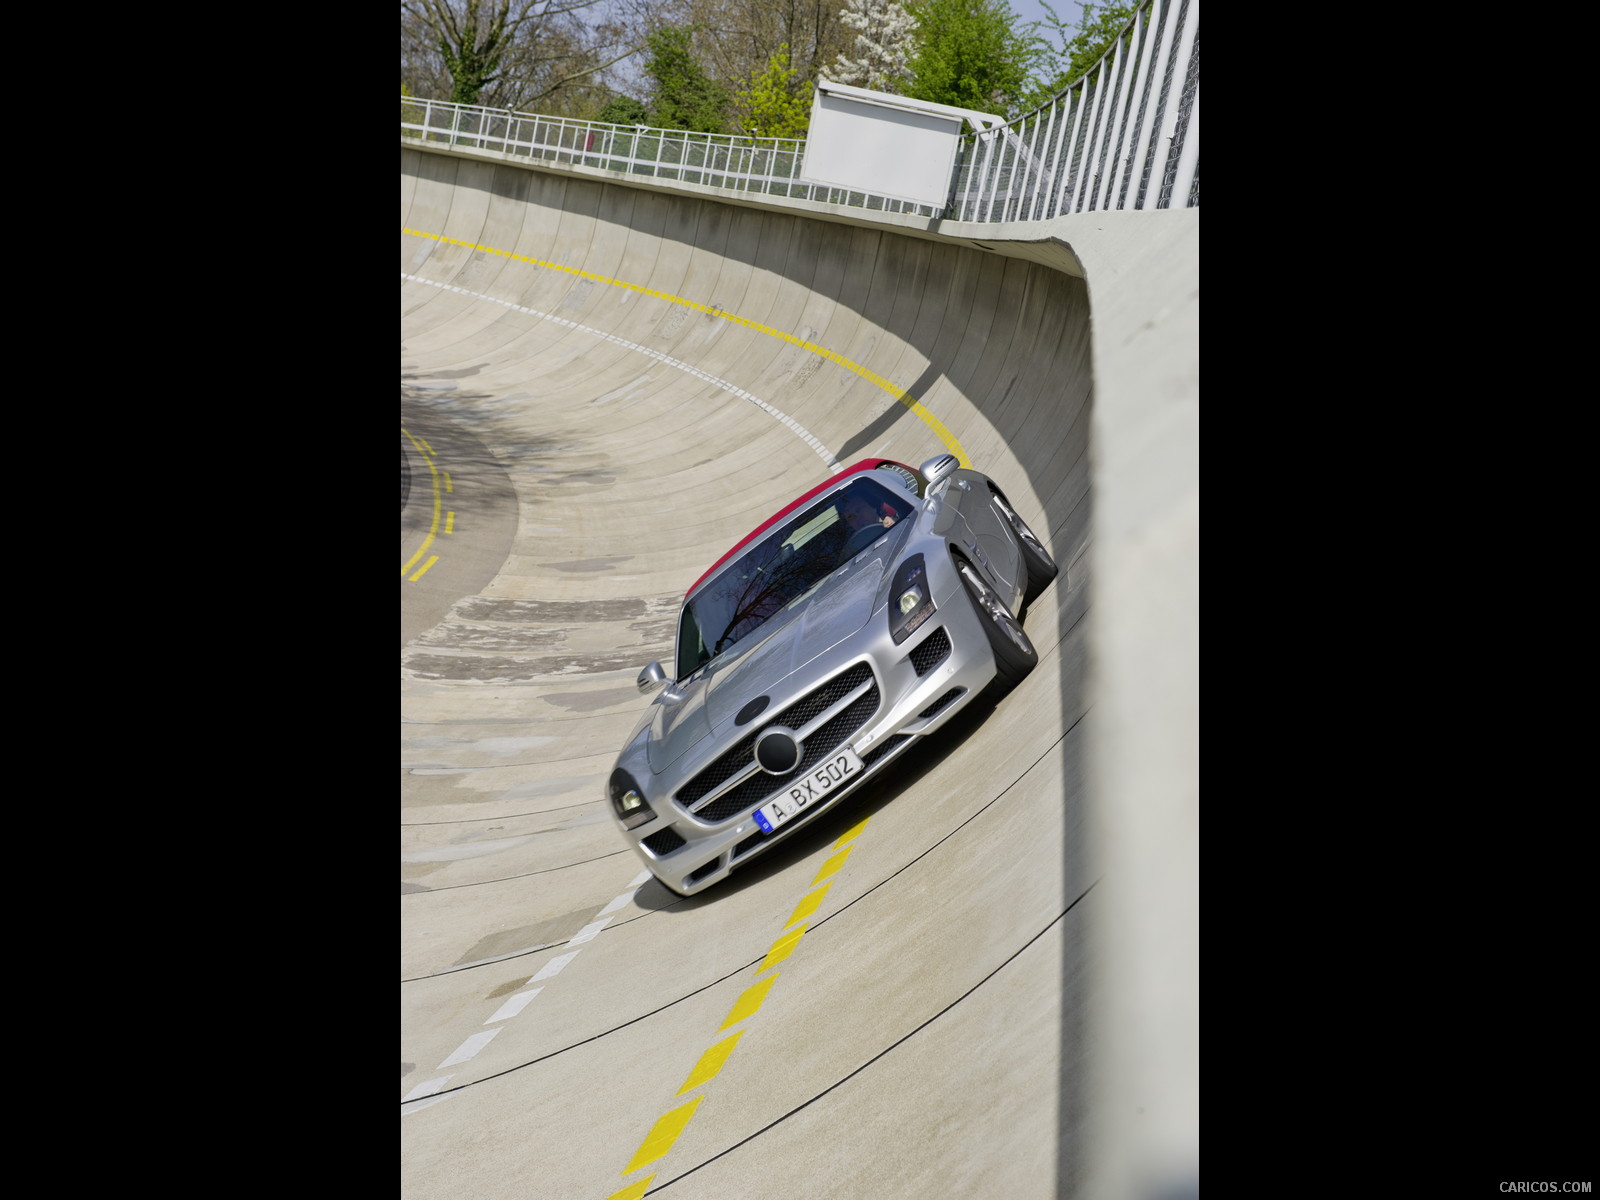 2012 Mercedes-Benz SLS AMG Roadster - Test track - , #119 of 129